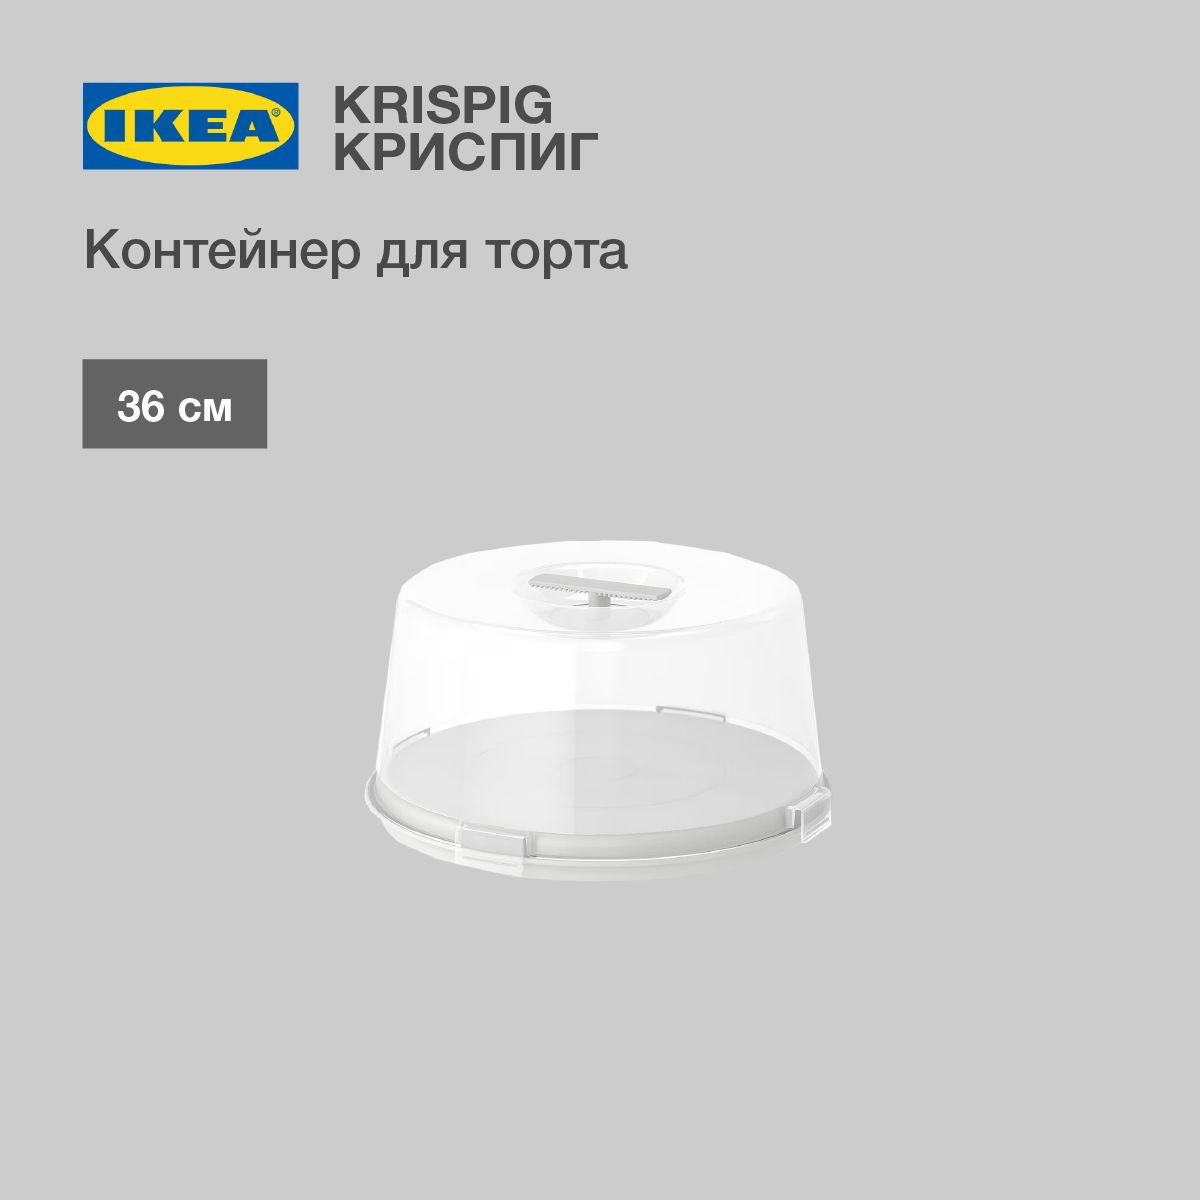 Контейнер для торта IKEA KRISPIG